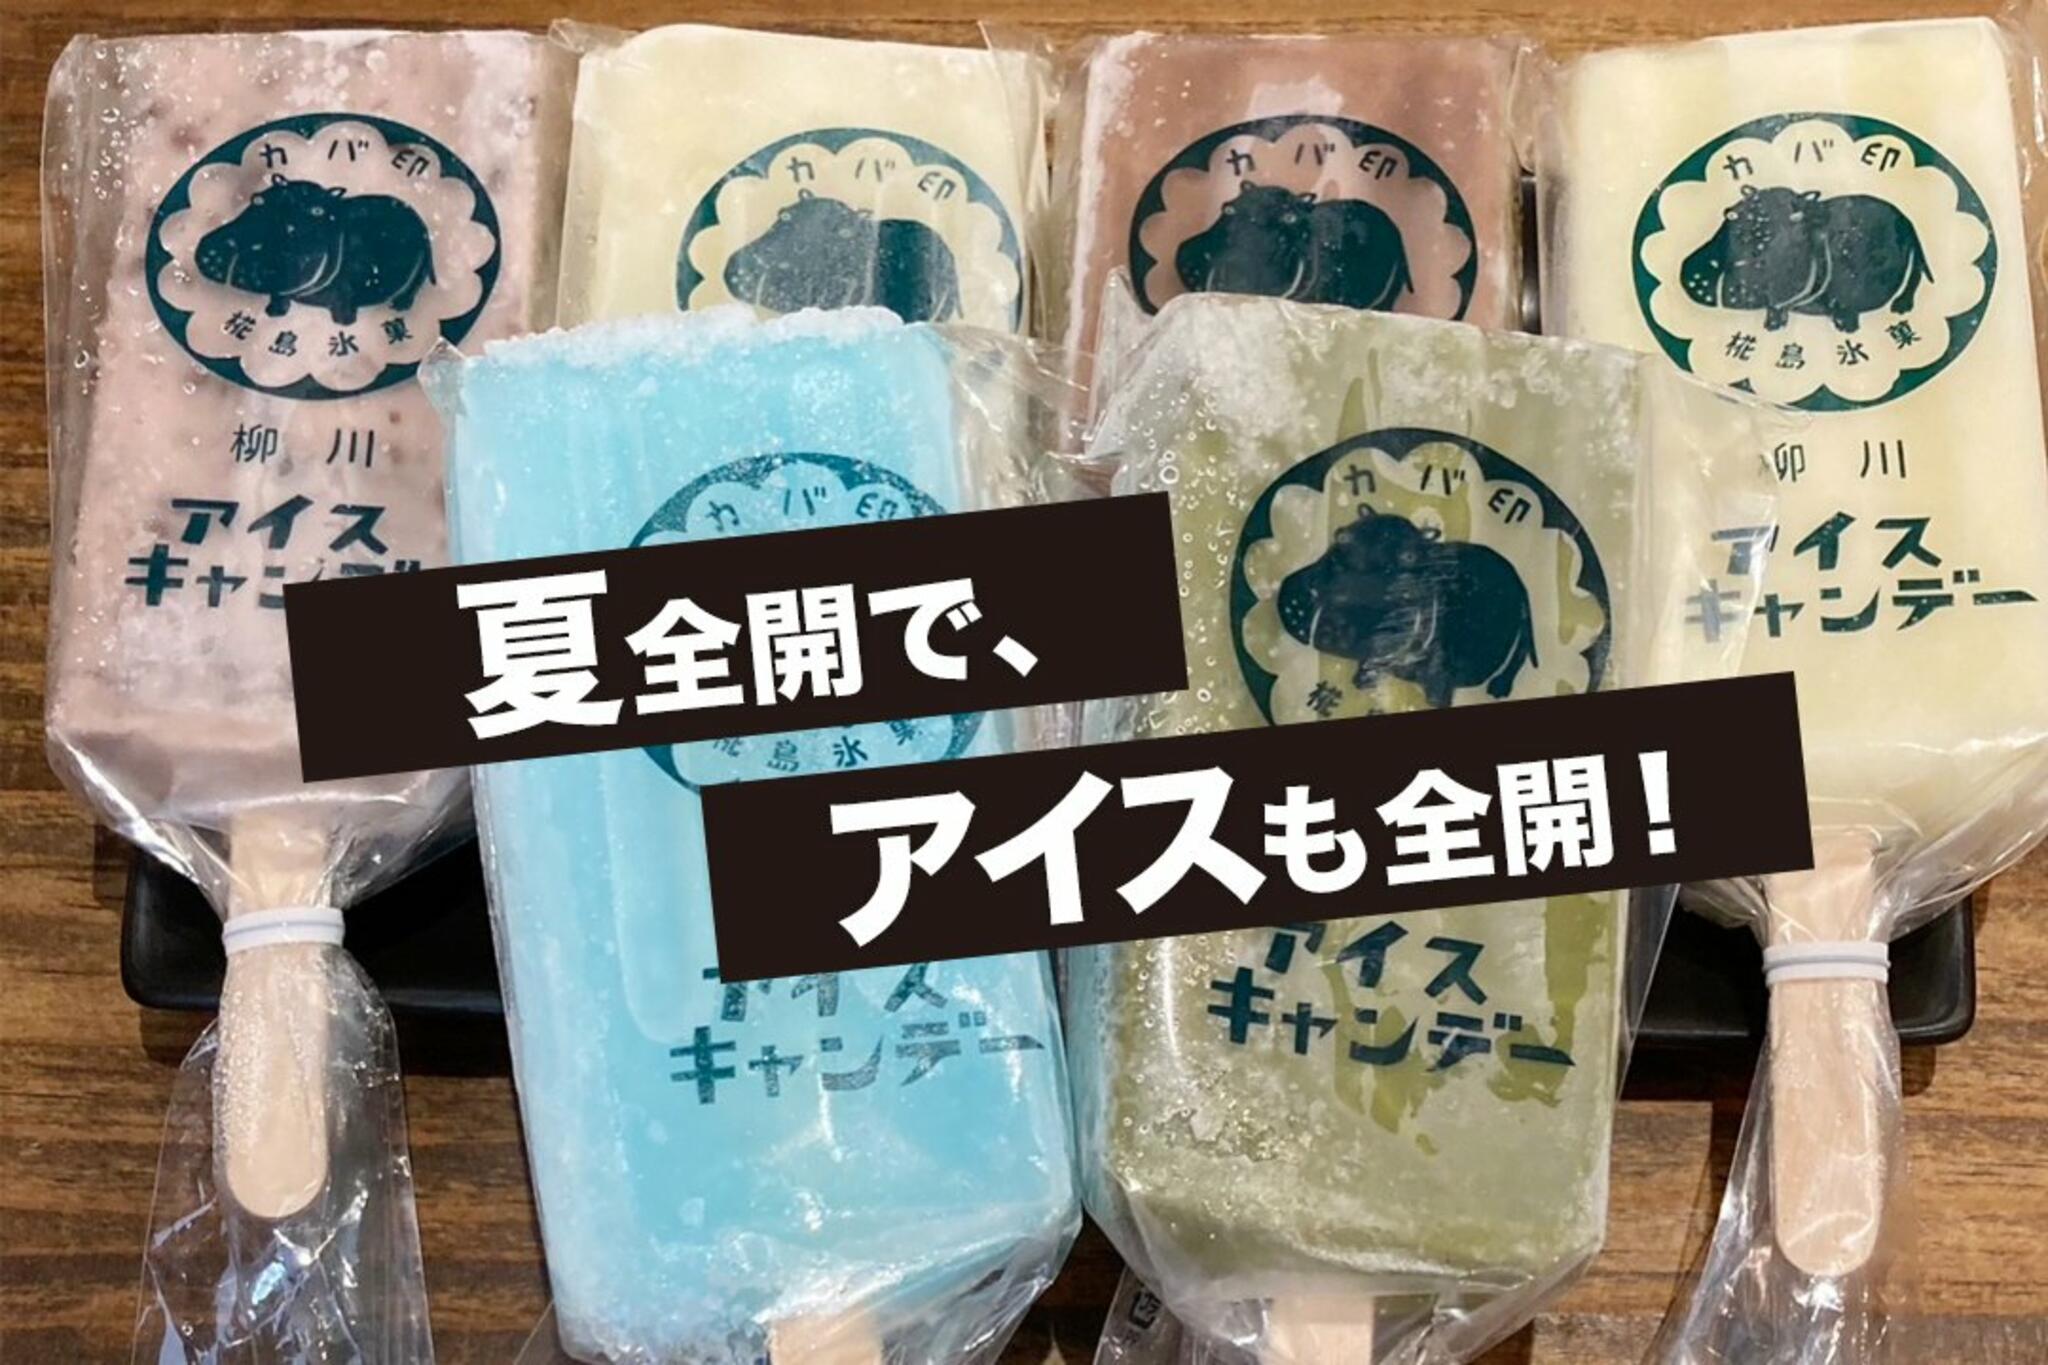 かばのおうどん 横浜元町本店からのお知らせ(昔なつかし、アイスキャンデー)に関する写真